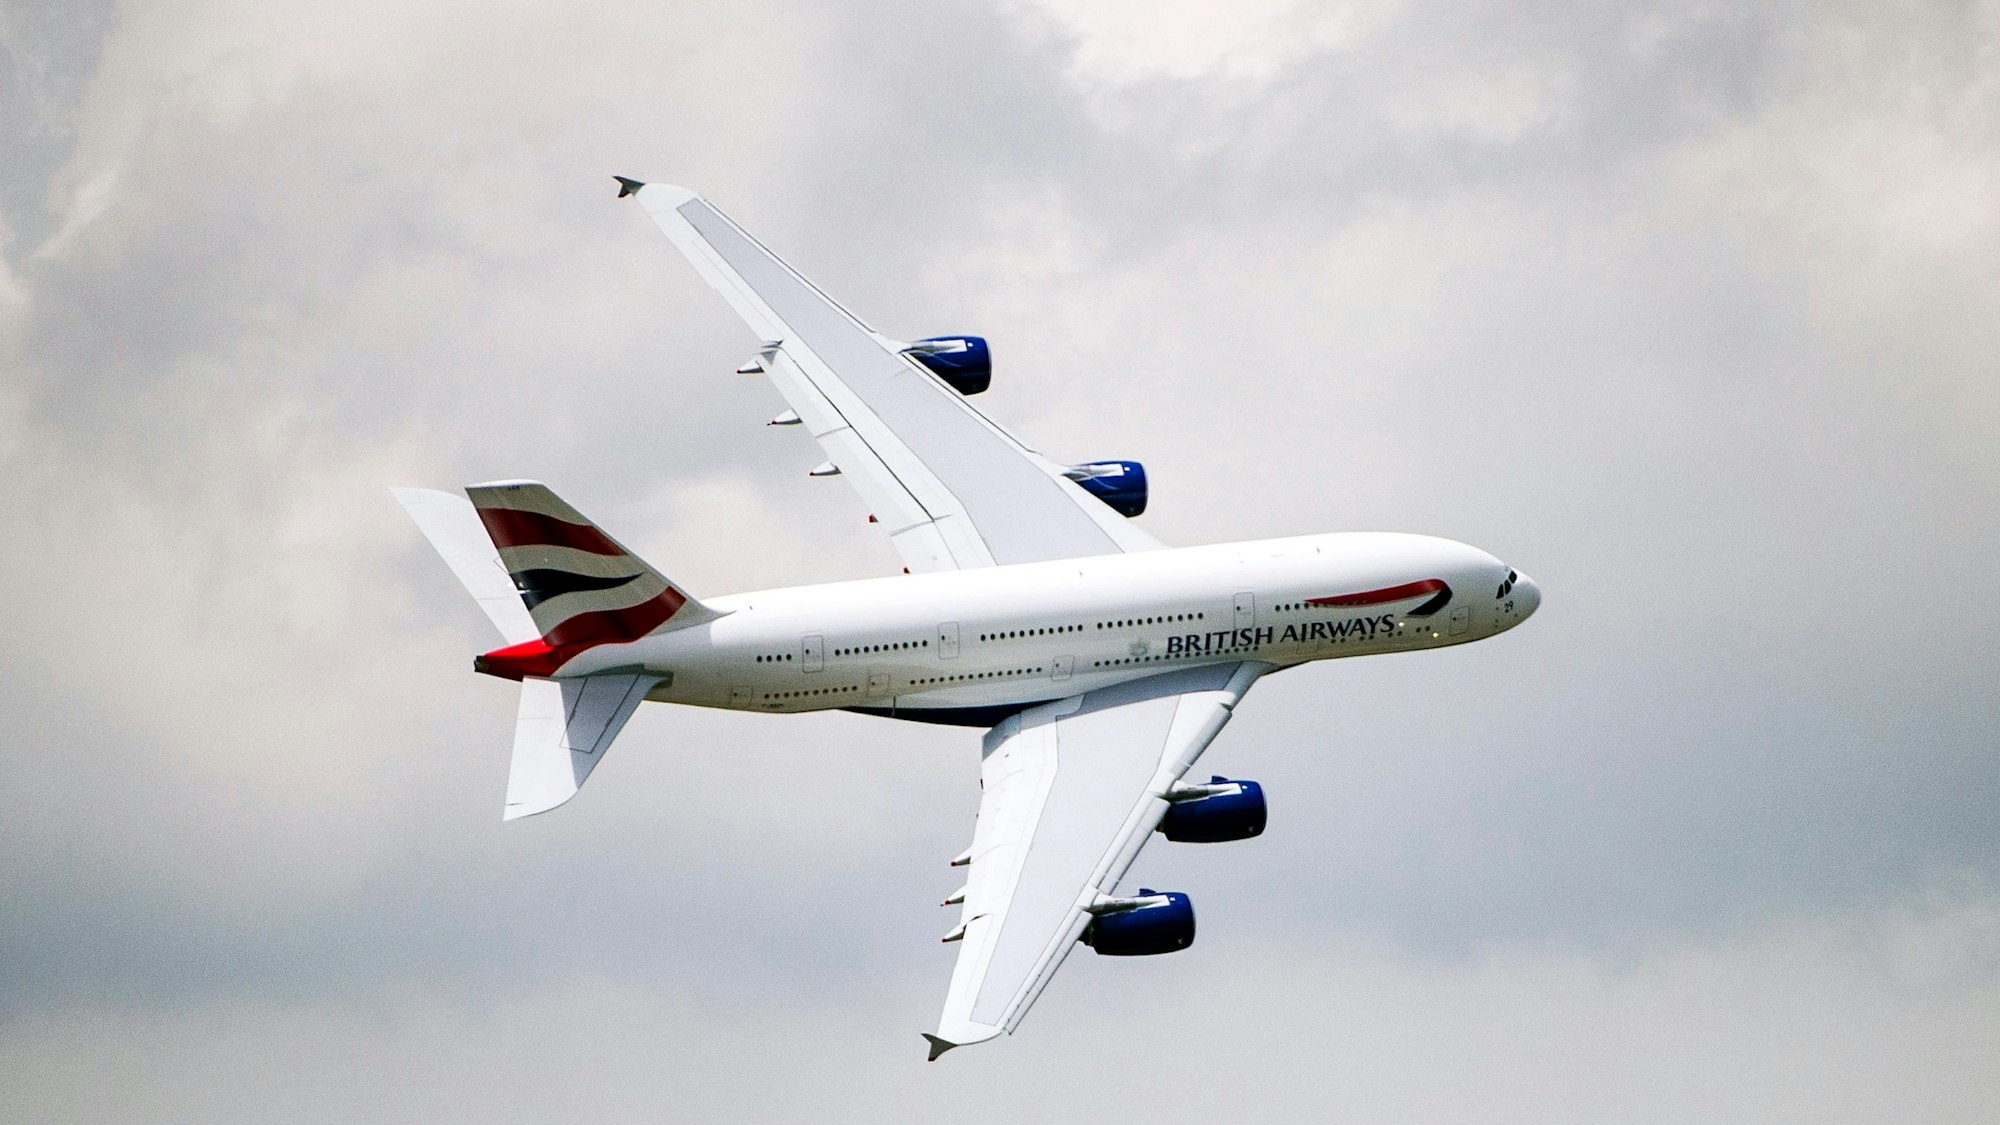 Ein Airbus A380 der britischen Fluggesellschaft British Airways fliegt vor einem Unwetter eine scharfe Kurve am Himmel. (Symbolbild)